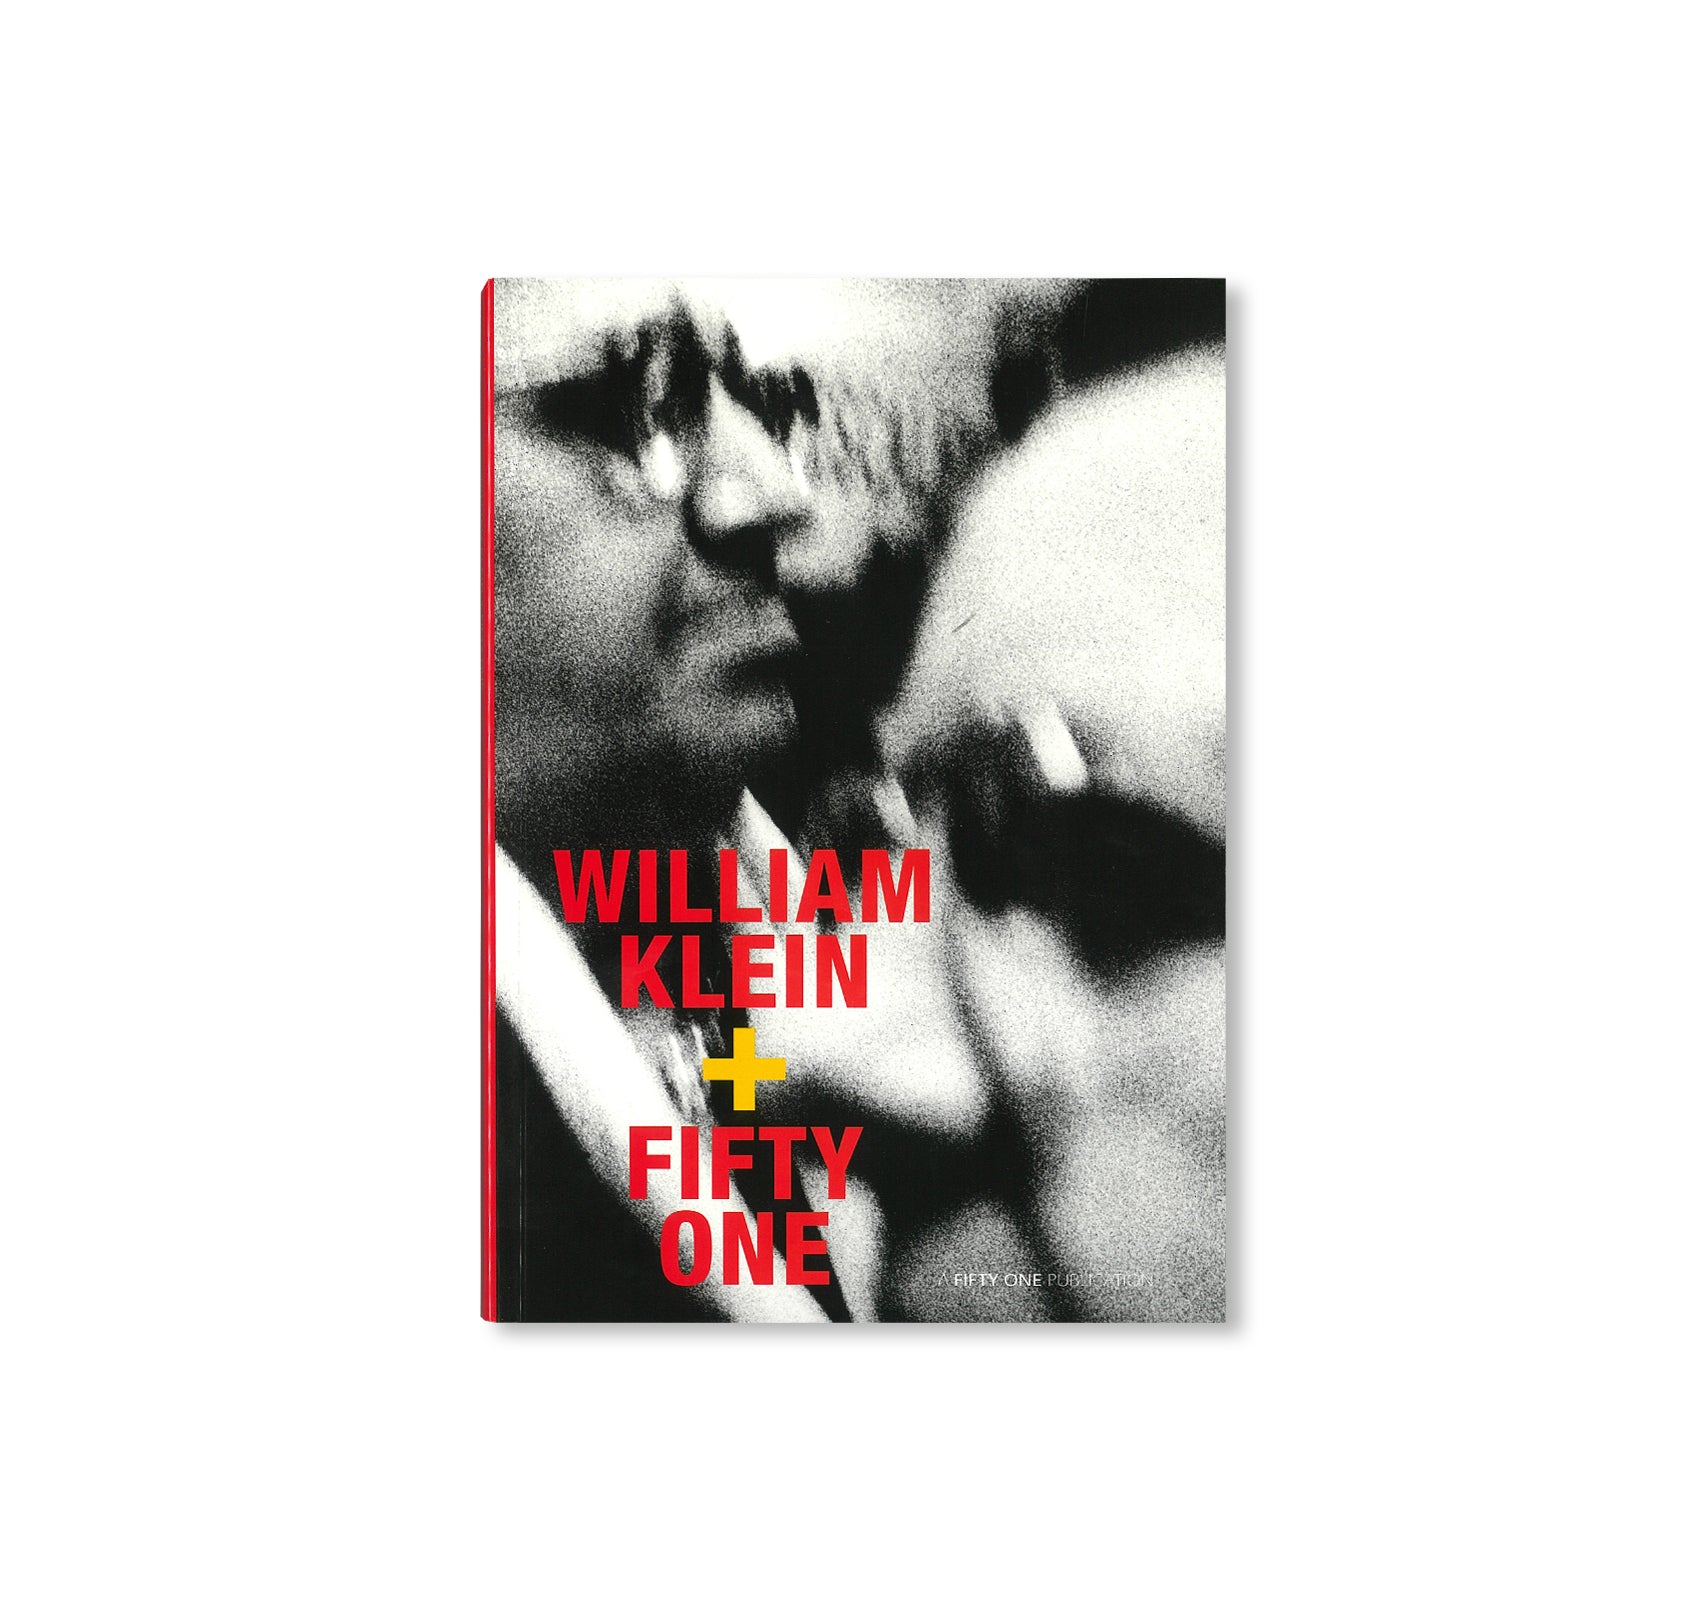 WILLIAM KLEIN by William Klein